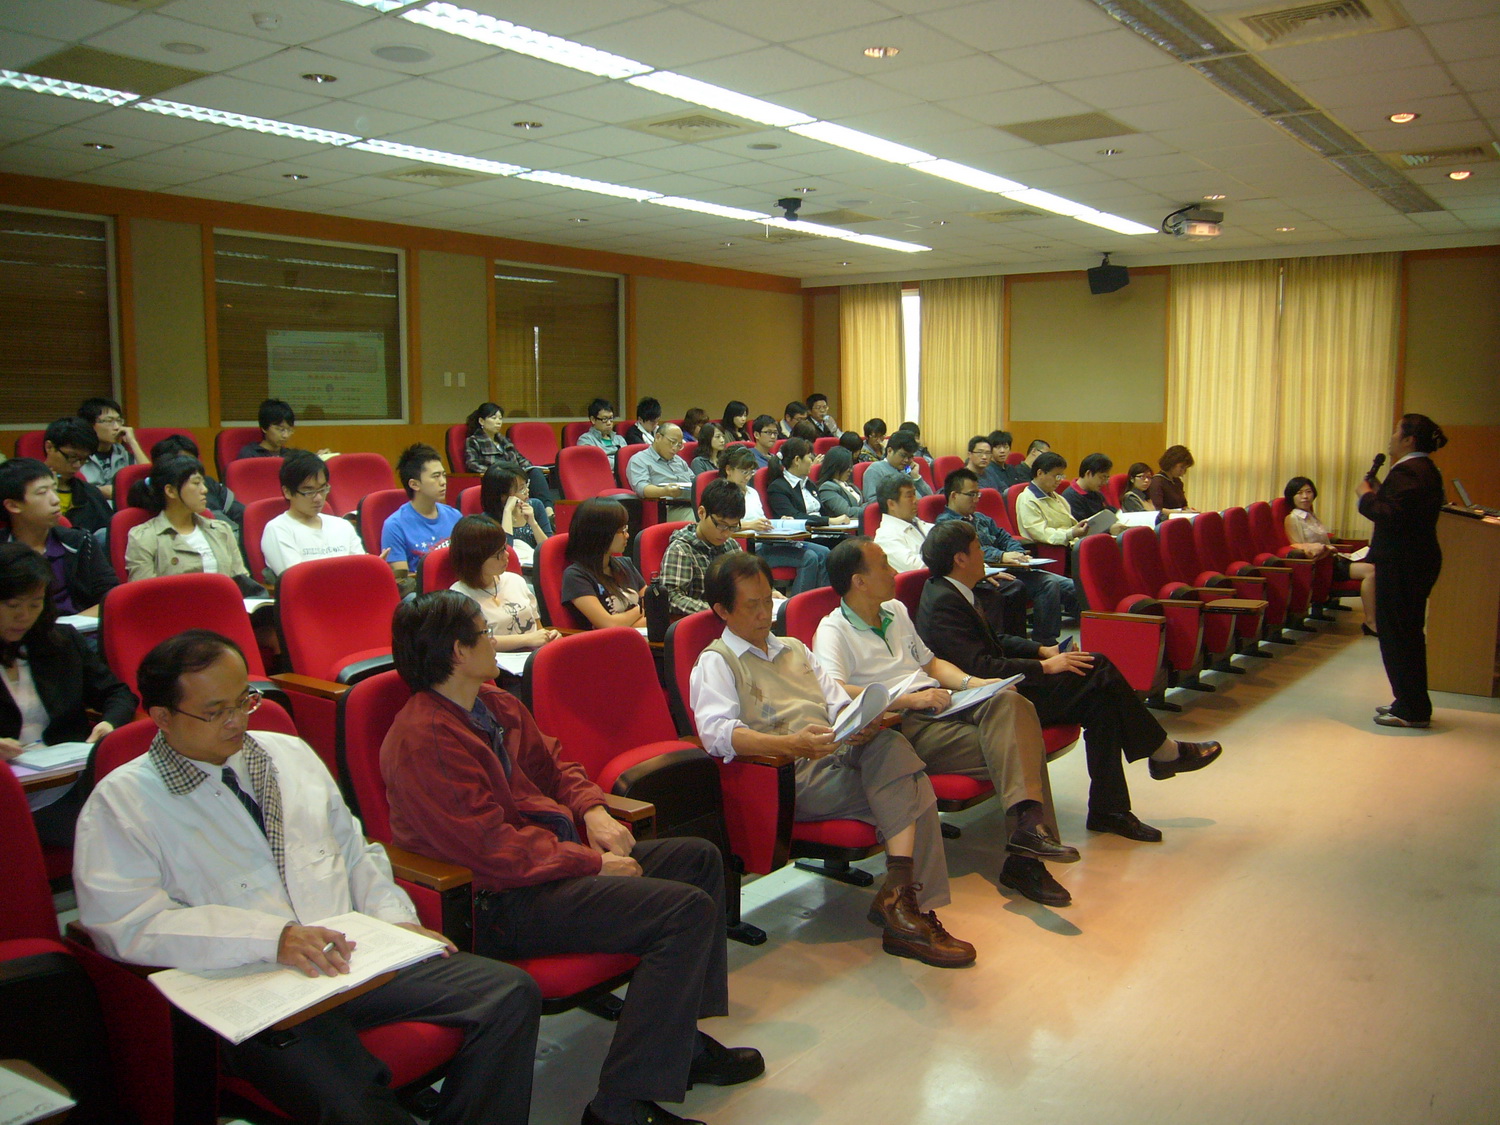 中國醫大與亞洲大學聯合舉辦區域產學合作論壇盛況